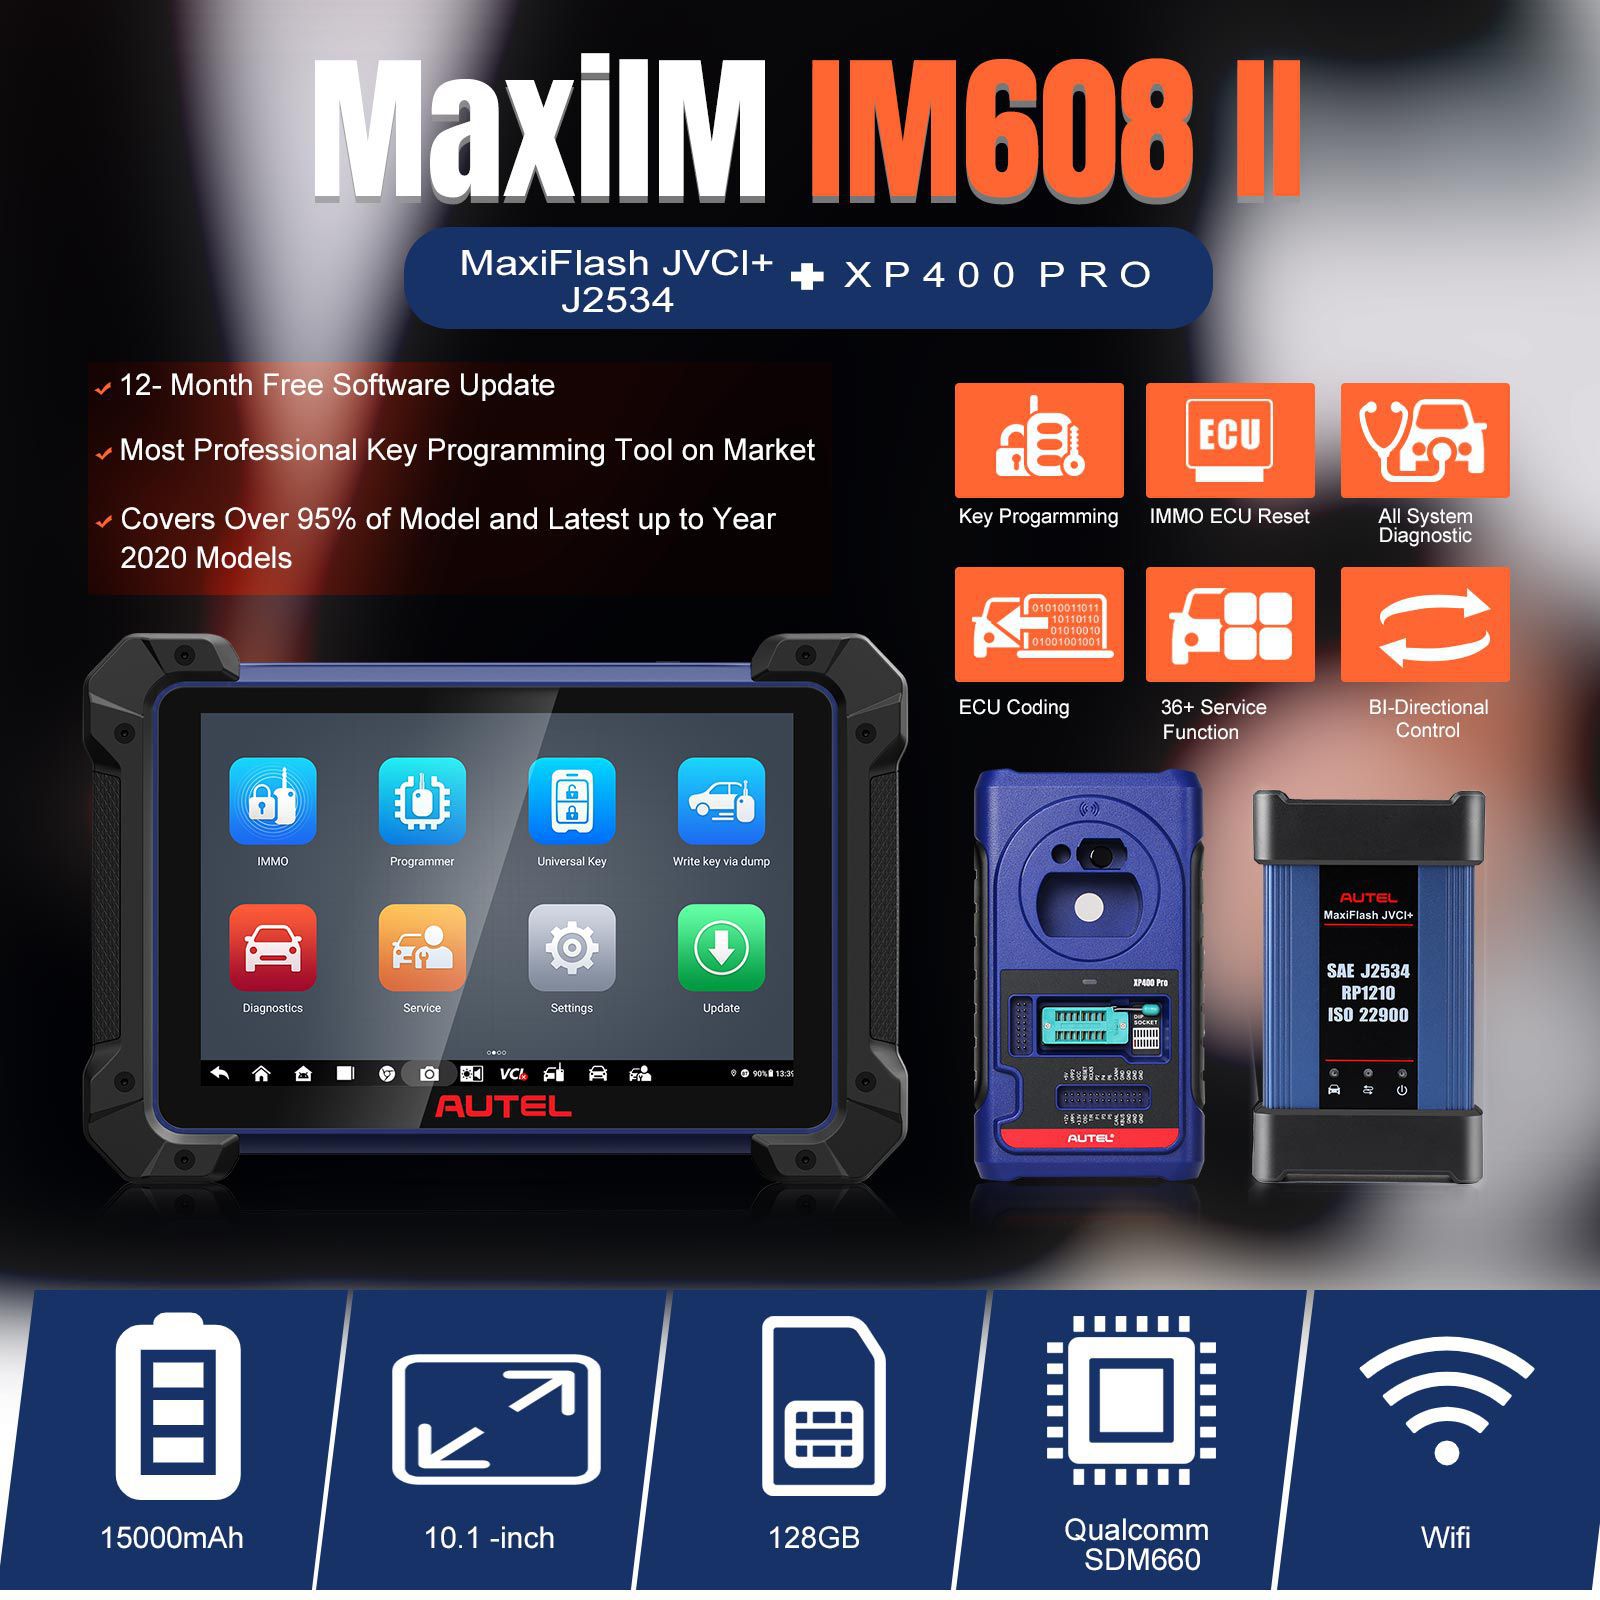 2023 Autel MaxiIM IM608 II (IM608 PRO II) Automotive All-in-One Schlüssel Programmierwerkzeug Keine IP-Beschränkung Erhalten Sie 2pcs Smart Key Uhr